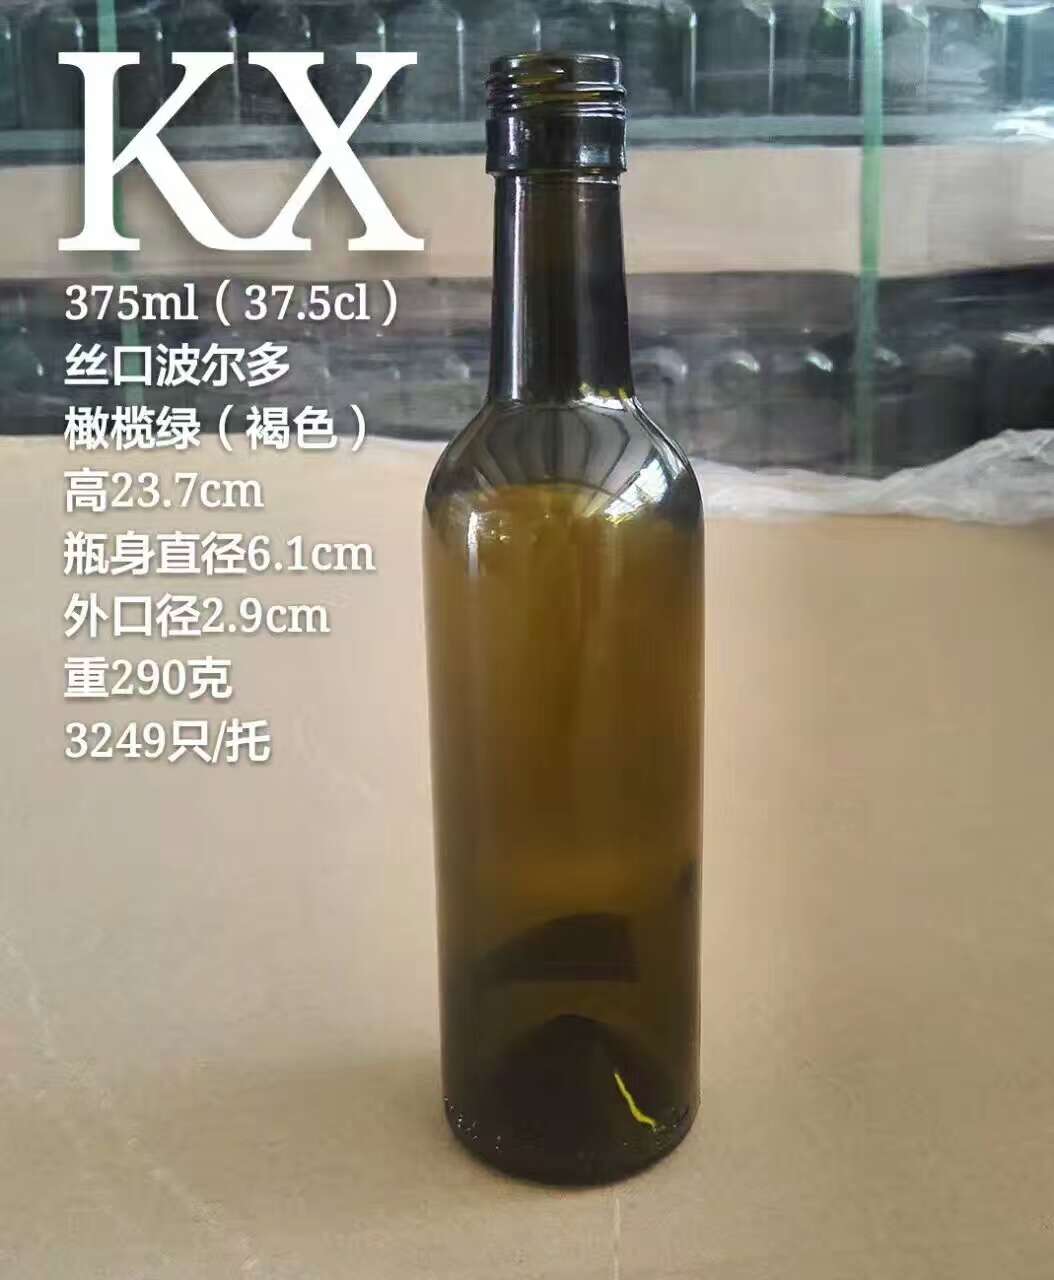 高档橄榄油瓶 徐州橄榄油瓶厂家 橄榄油瓶供应商 高档橄榄油瓶热销图片